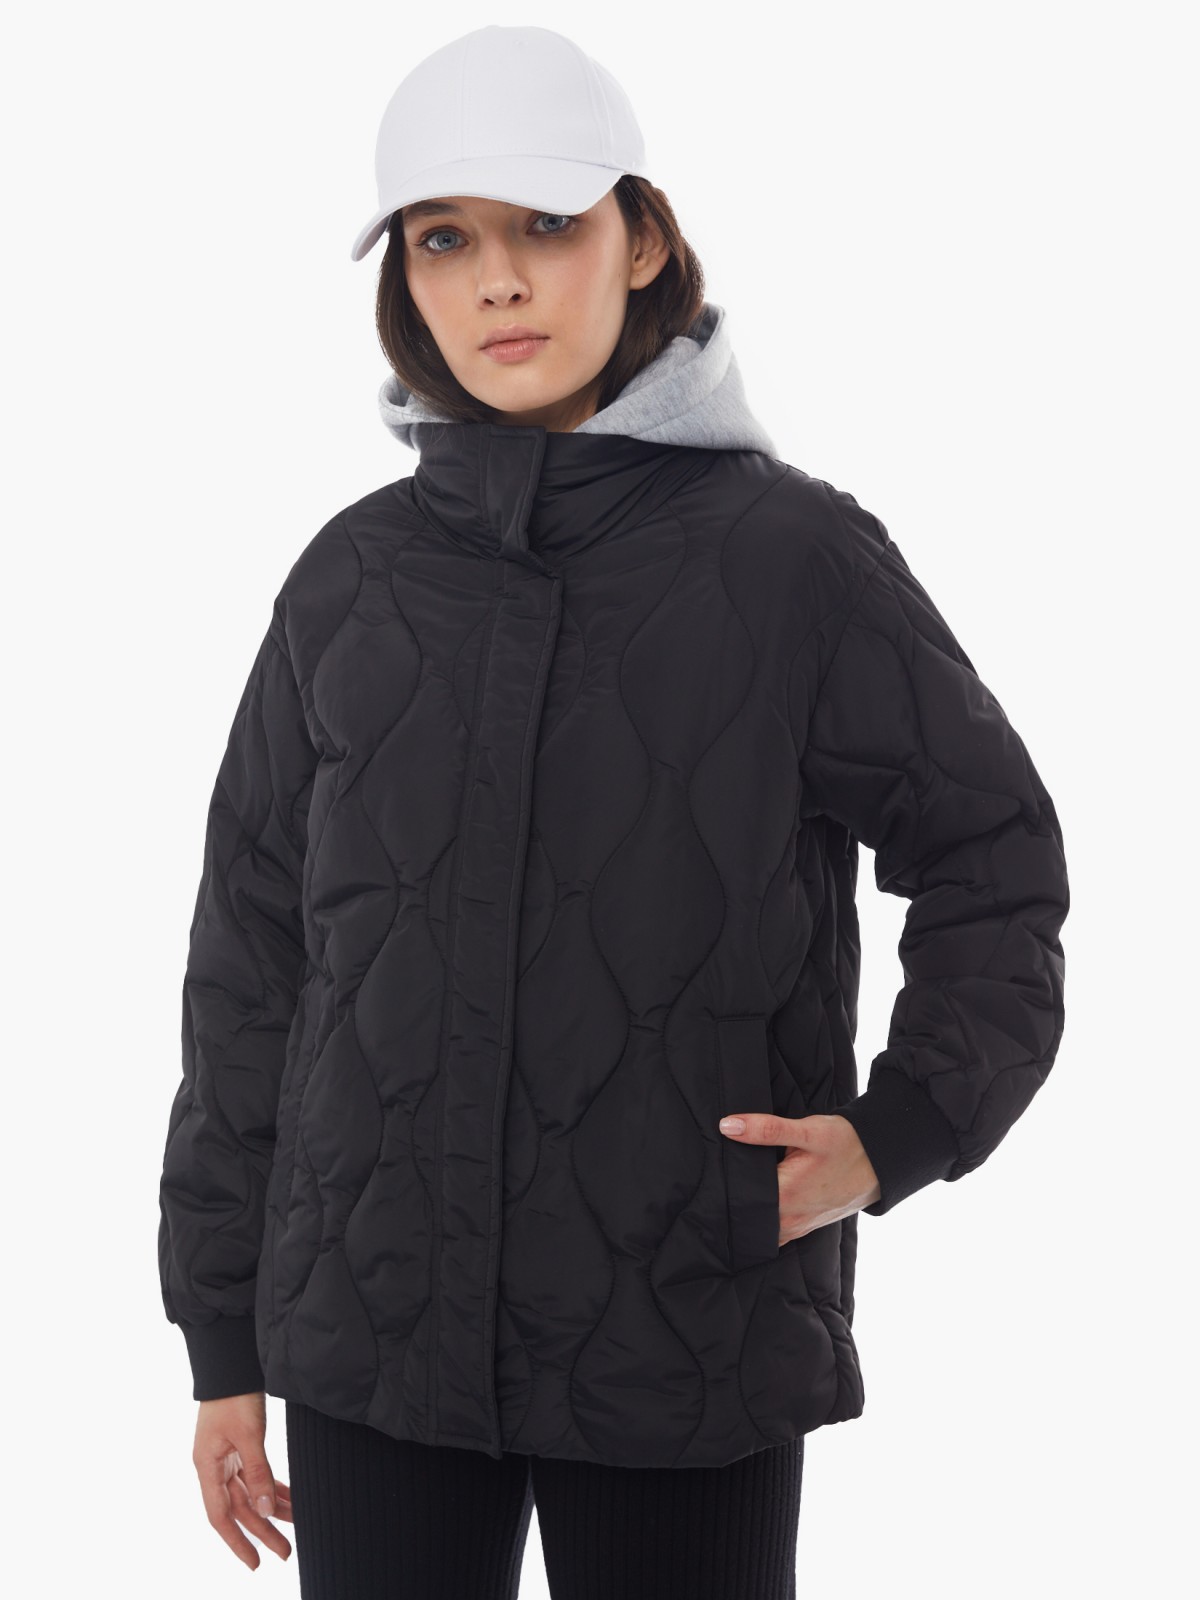 Стёганая куртка со съёмным капюшоном из трикотажа zolla 024125112134, цвет черный, размер XS